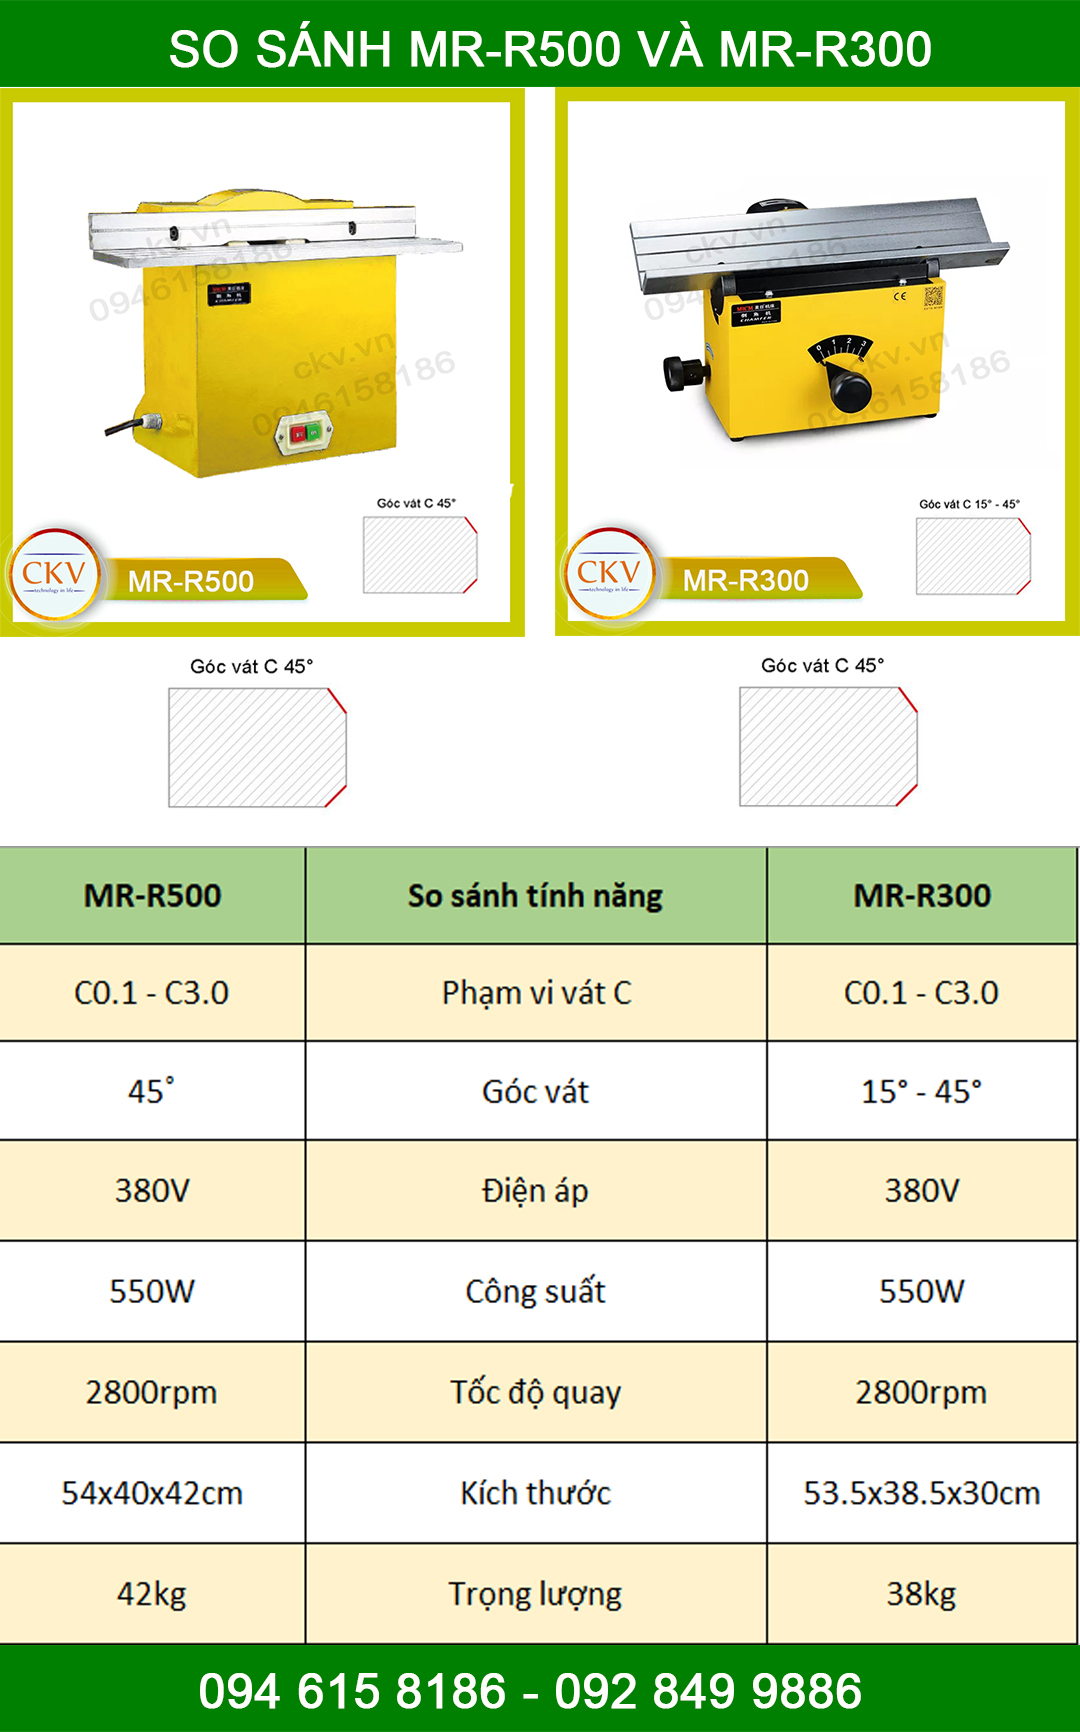 So sánh MR-R500 và MR-R300